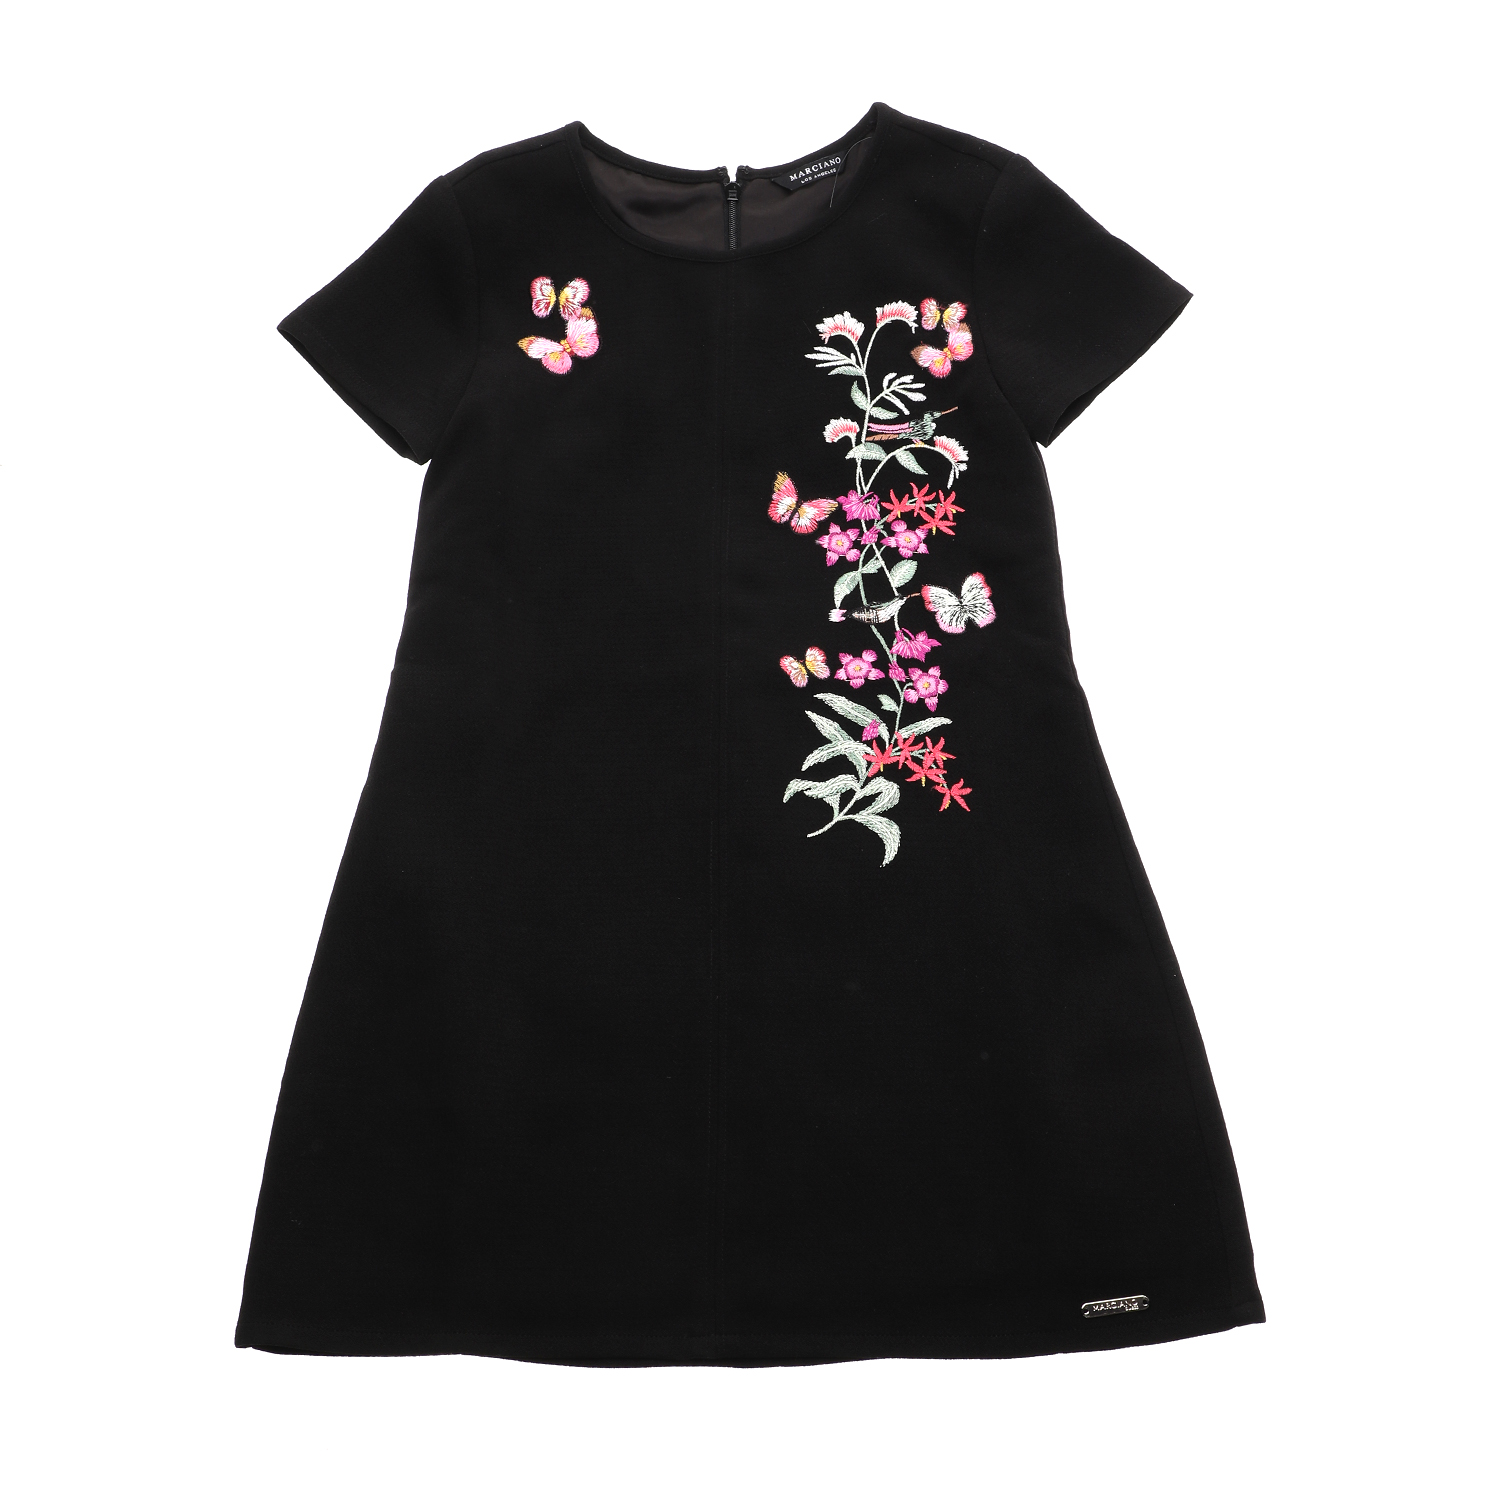 Παιδικά/Girls/Ρούχα/Φορέματα Κοντομάνικα-Αμάνικα GUESS KIDS - Παιδικό mini φόρεμα GUESS KIDS μαύρο